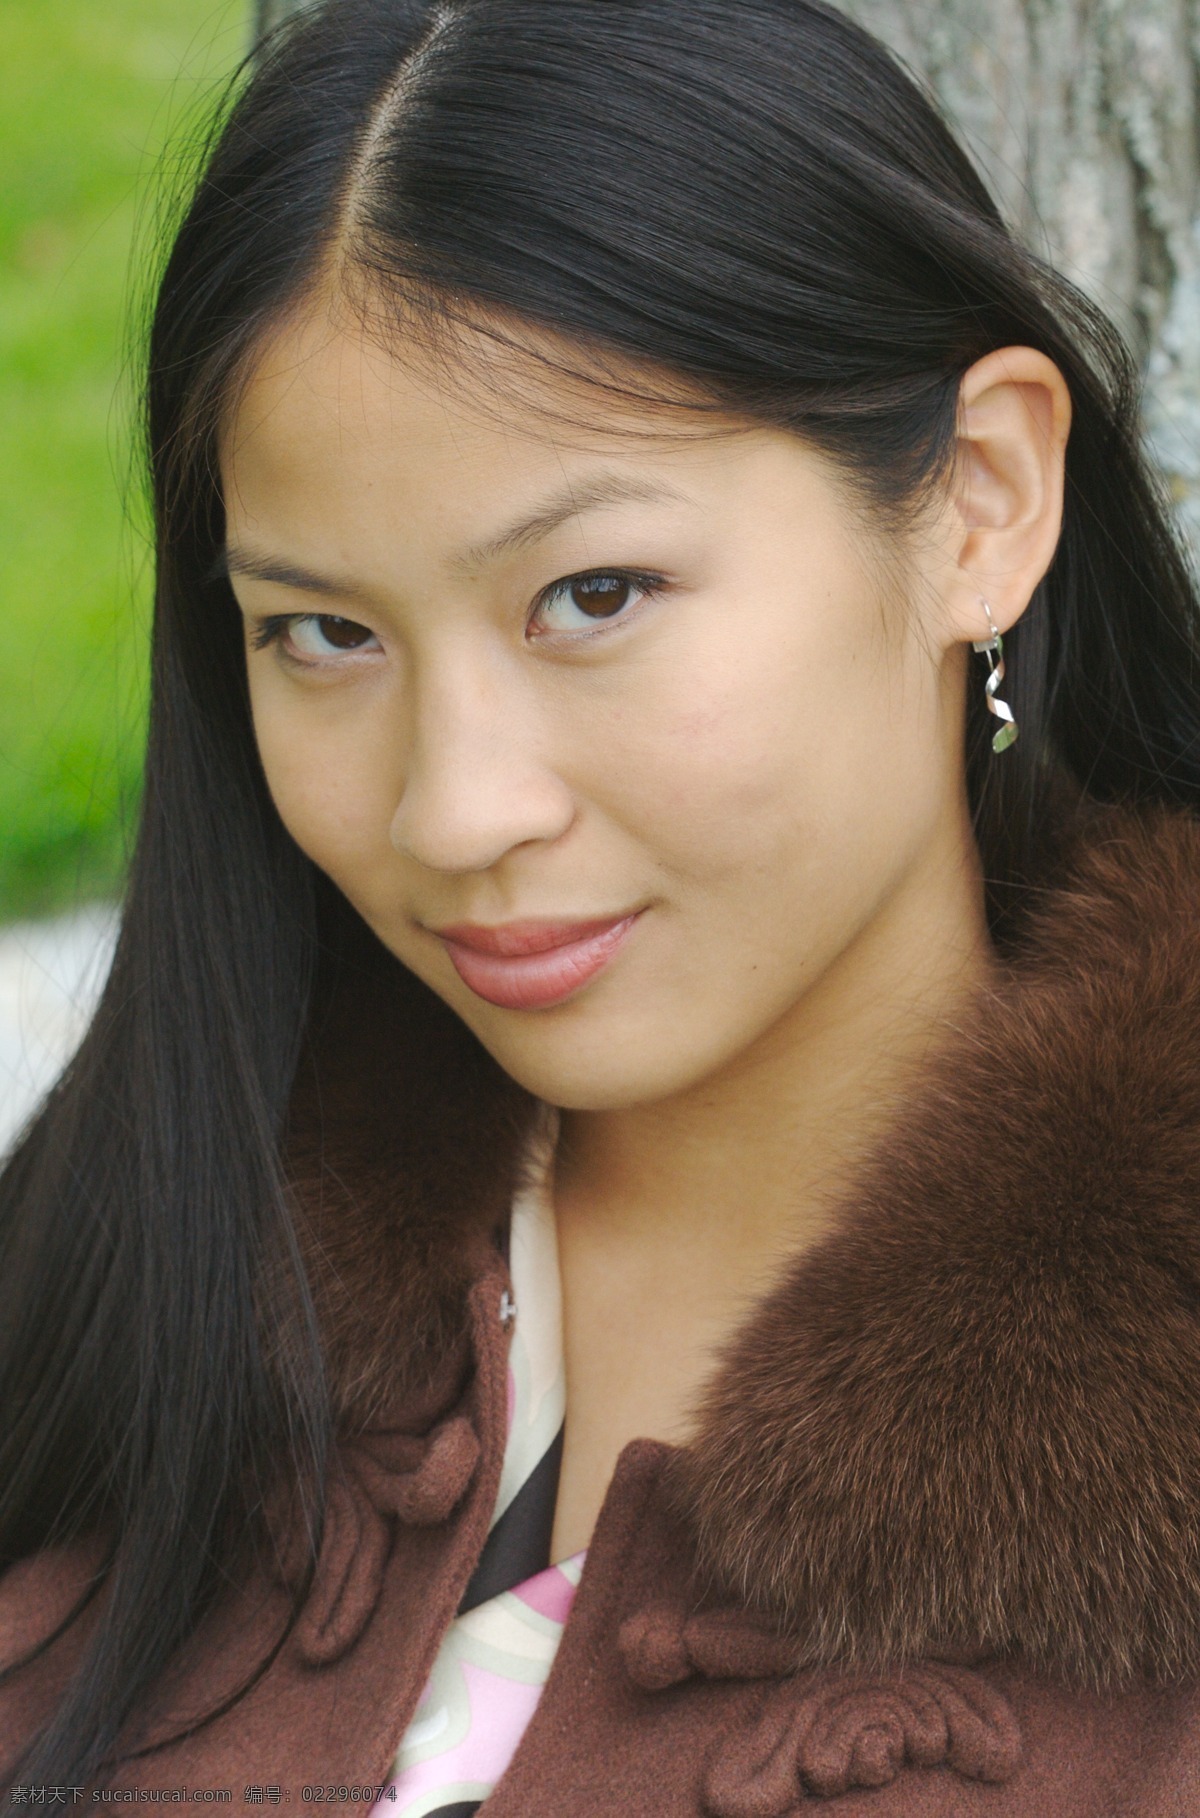 加拿大 华裔 女子 青丝秀发 淡淡细眉 端鼻红唇 动人眼神 毛领羊绒衫 漂亮女人 外国华人 女性人物写真 女人 女性女人 人物图库